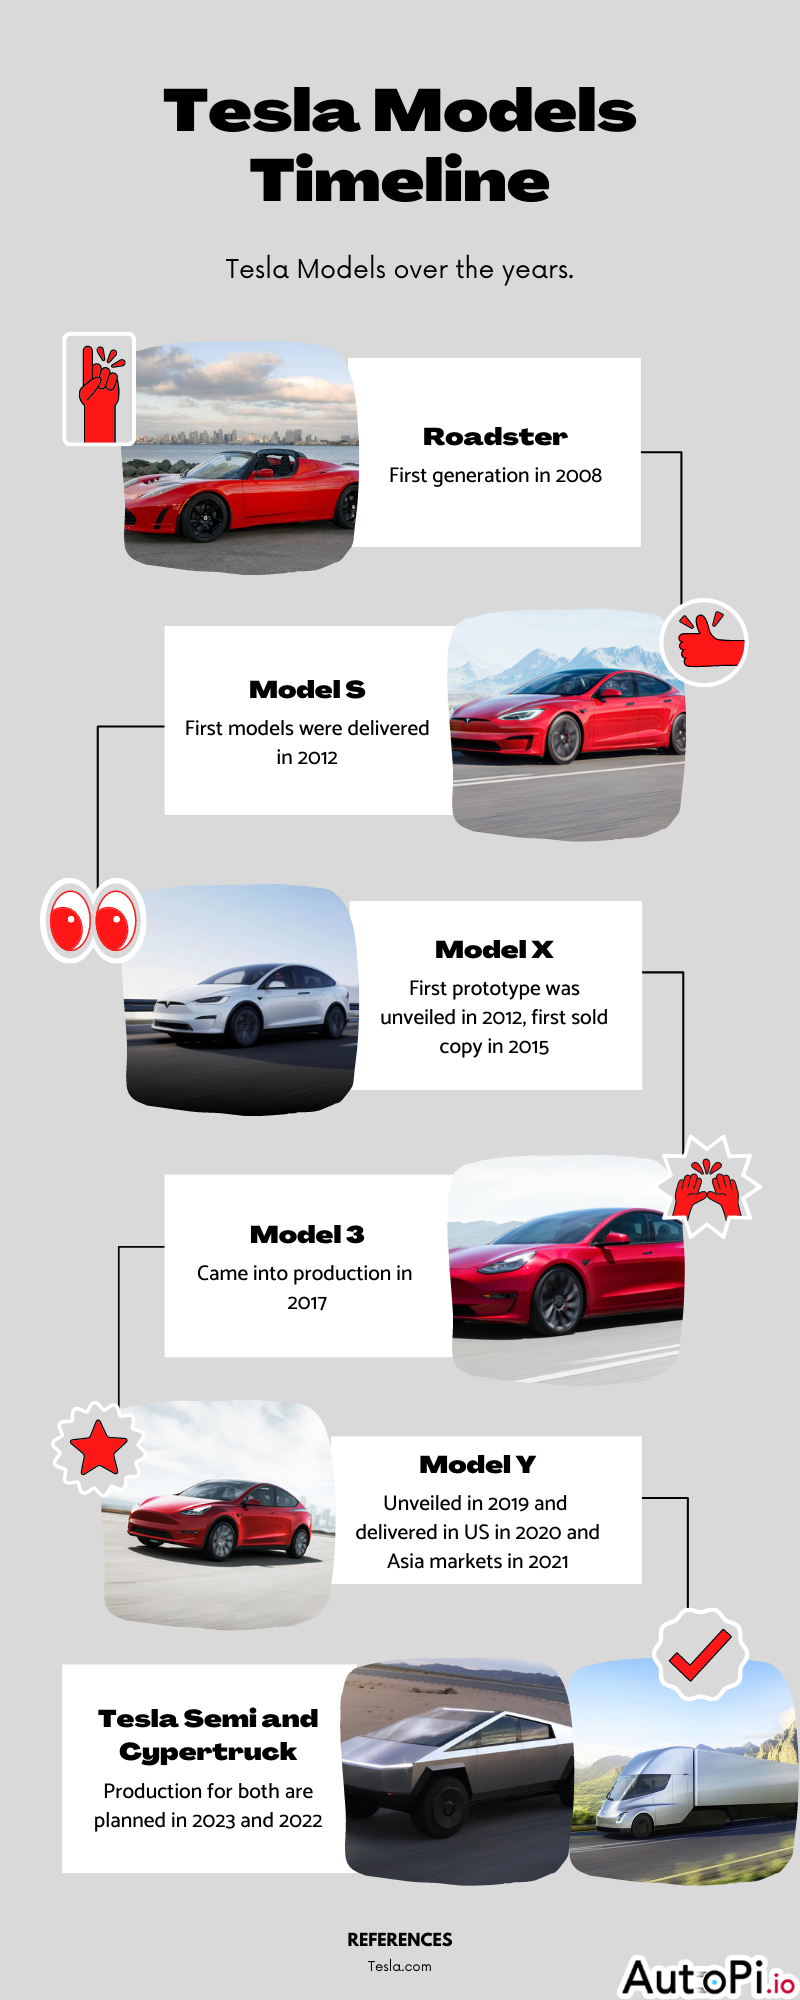 Tesla Models Timeline